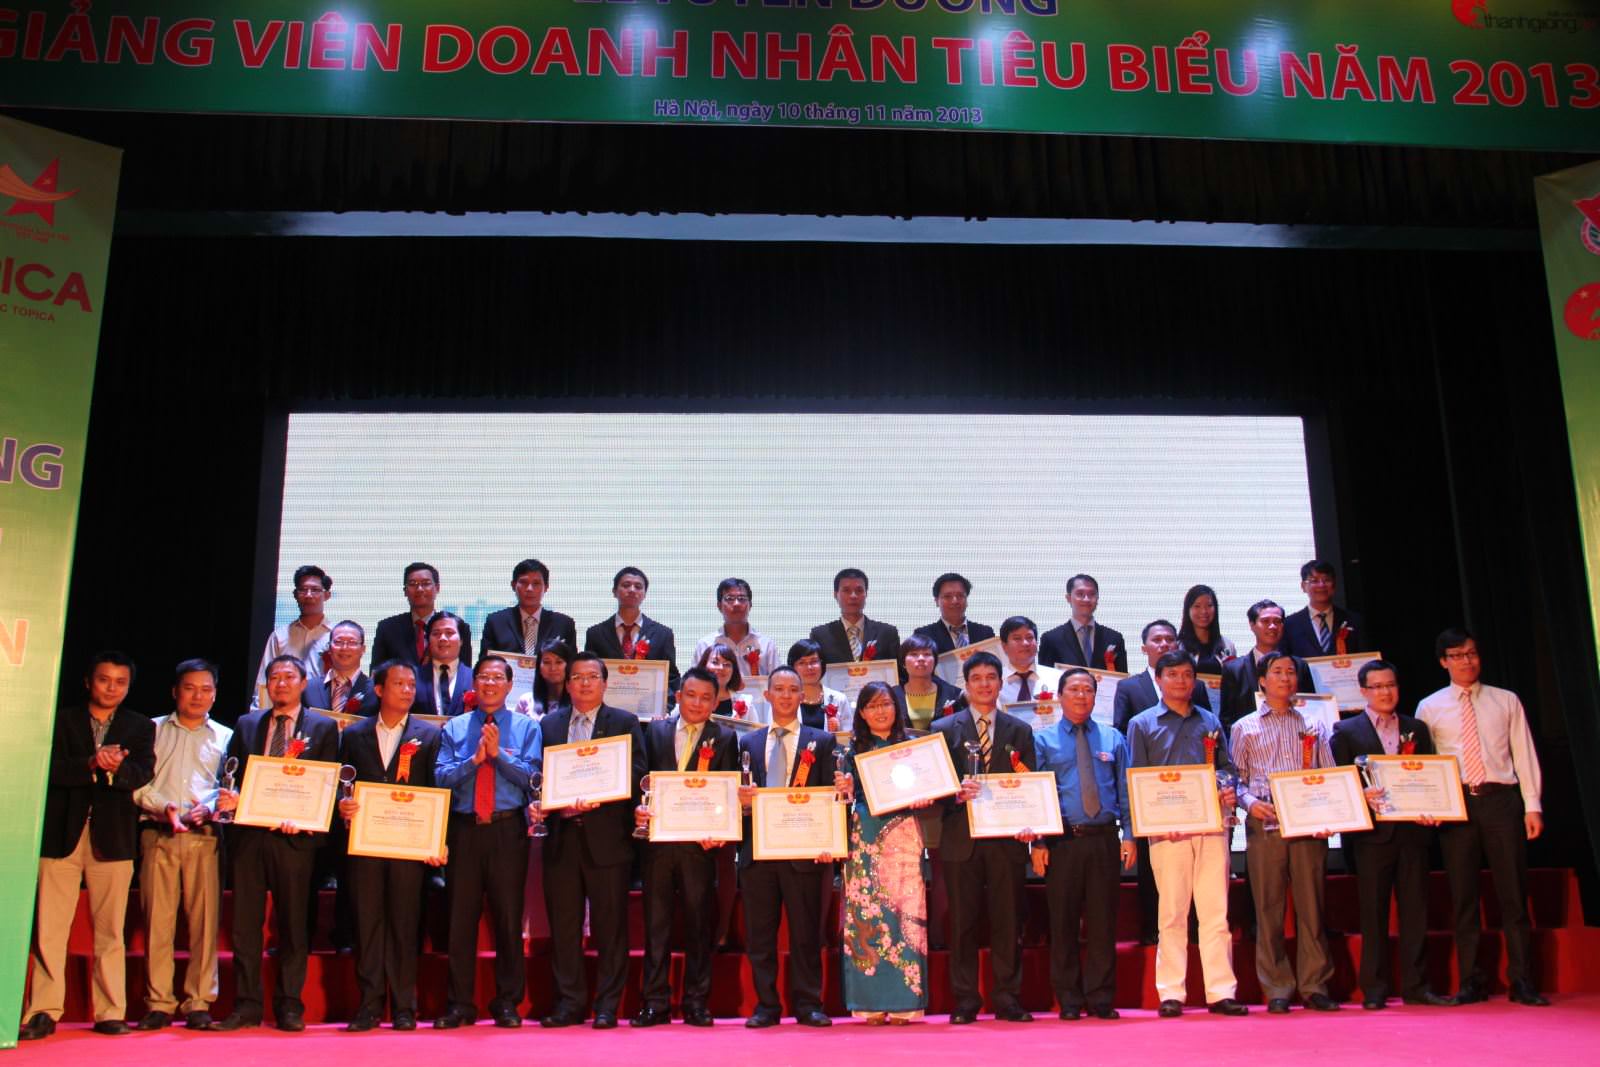 Chủ tịch Nguyễn Xuân Phú được vinh danh “Giảng viên Doanh nhân tiêu biểu năm 2013” 2